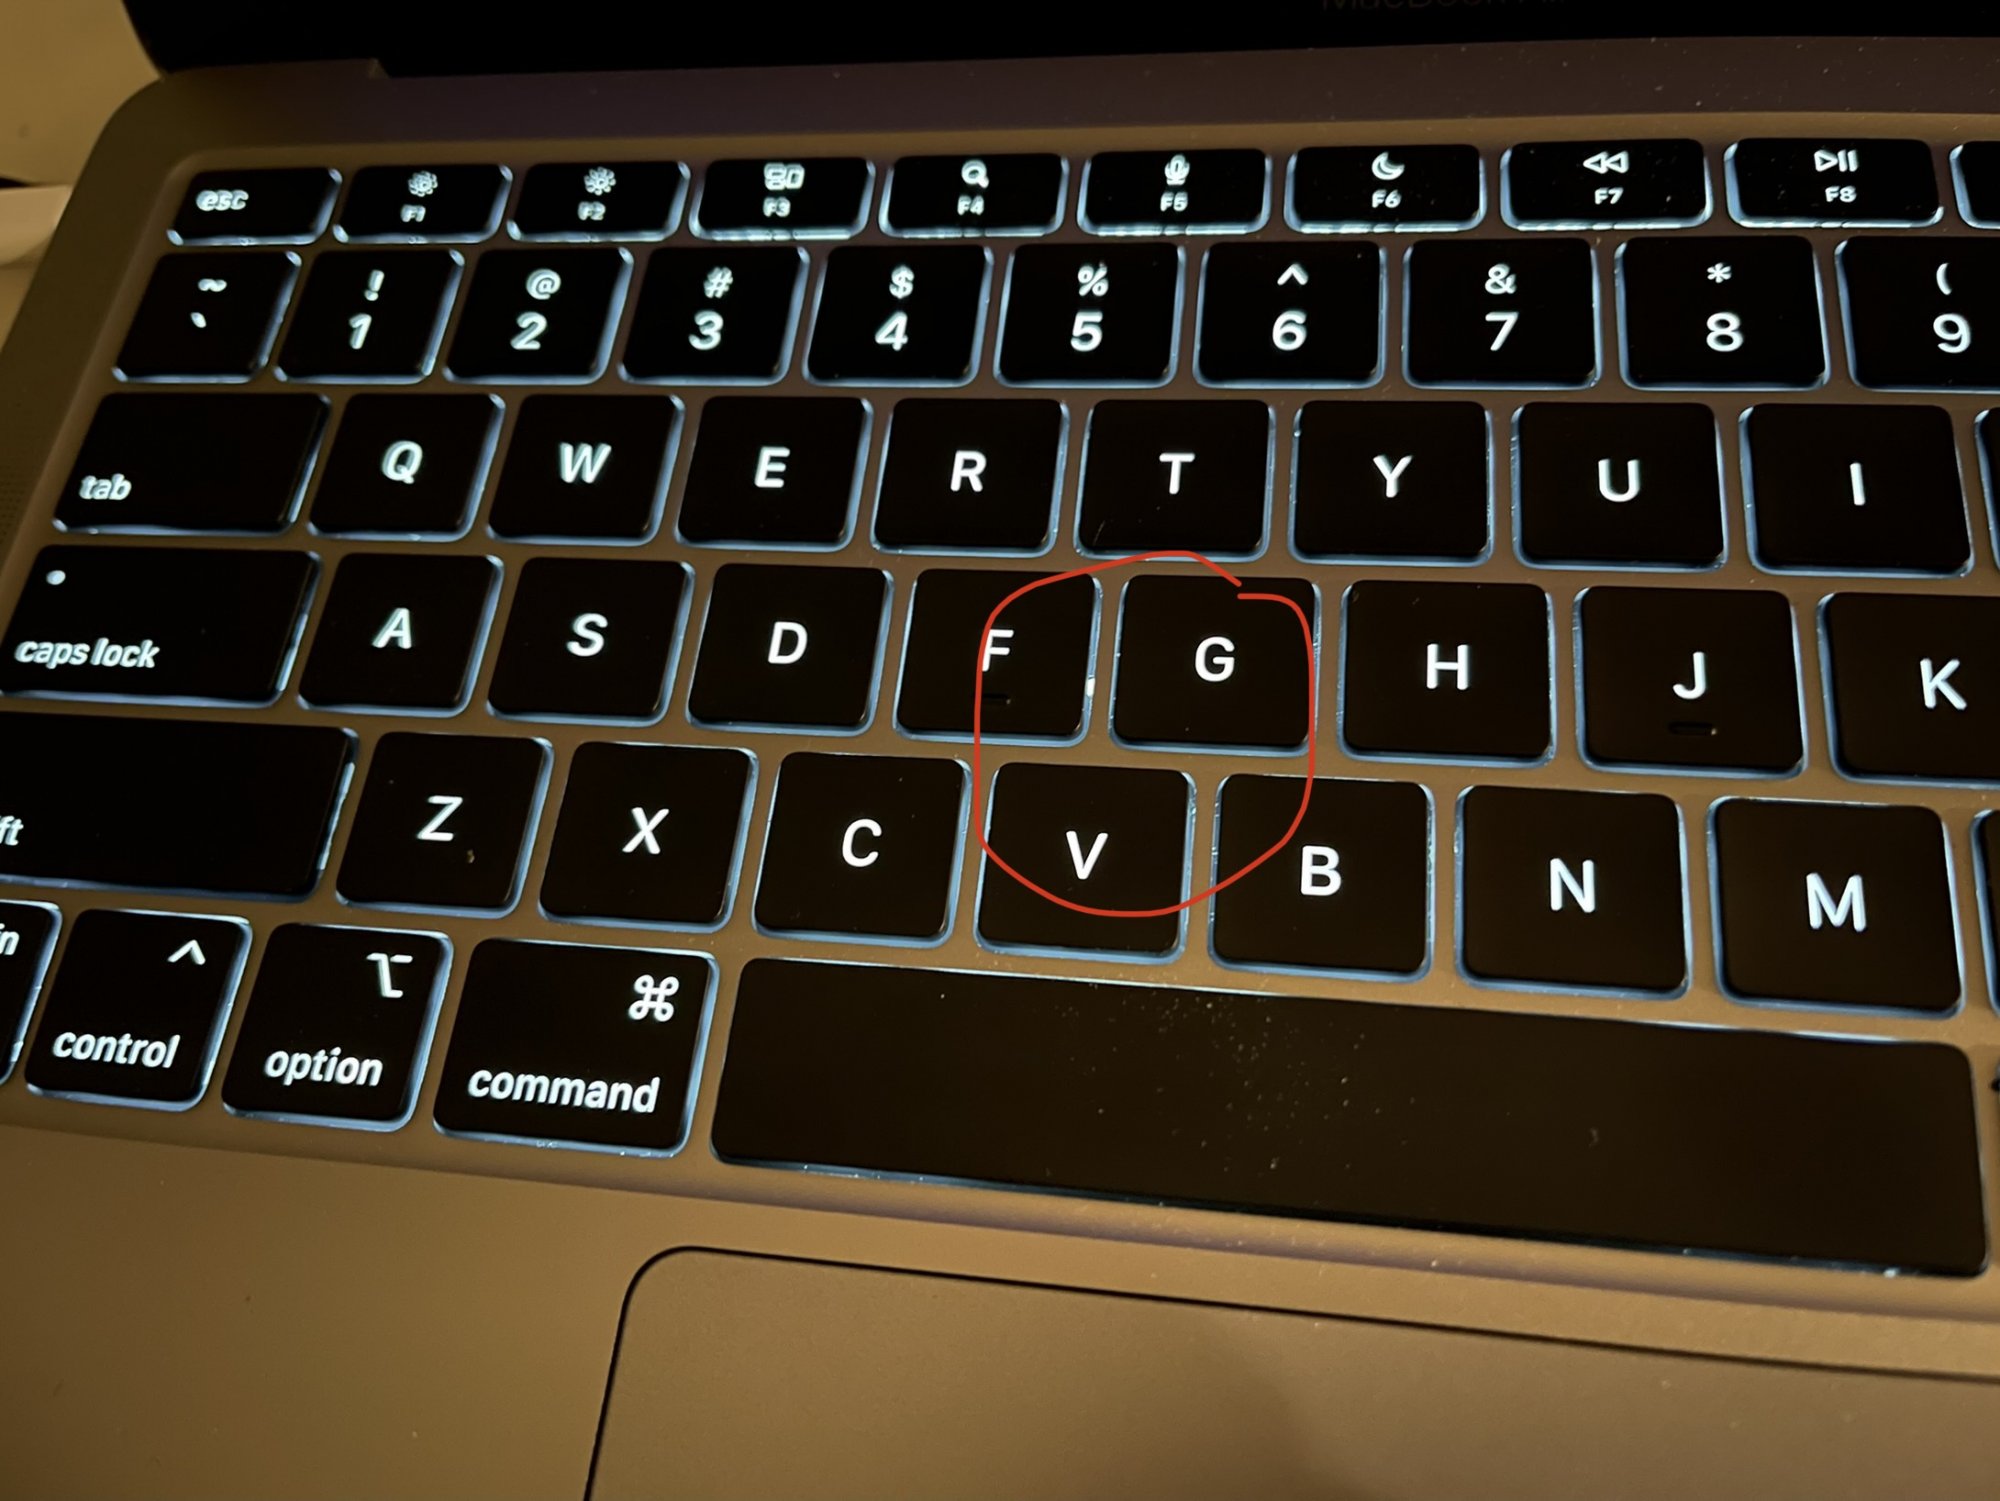 M1 Macbook Air Keyboard Lightbleed Right Of F Key Macrumors Forums